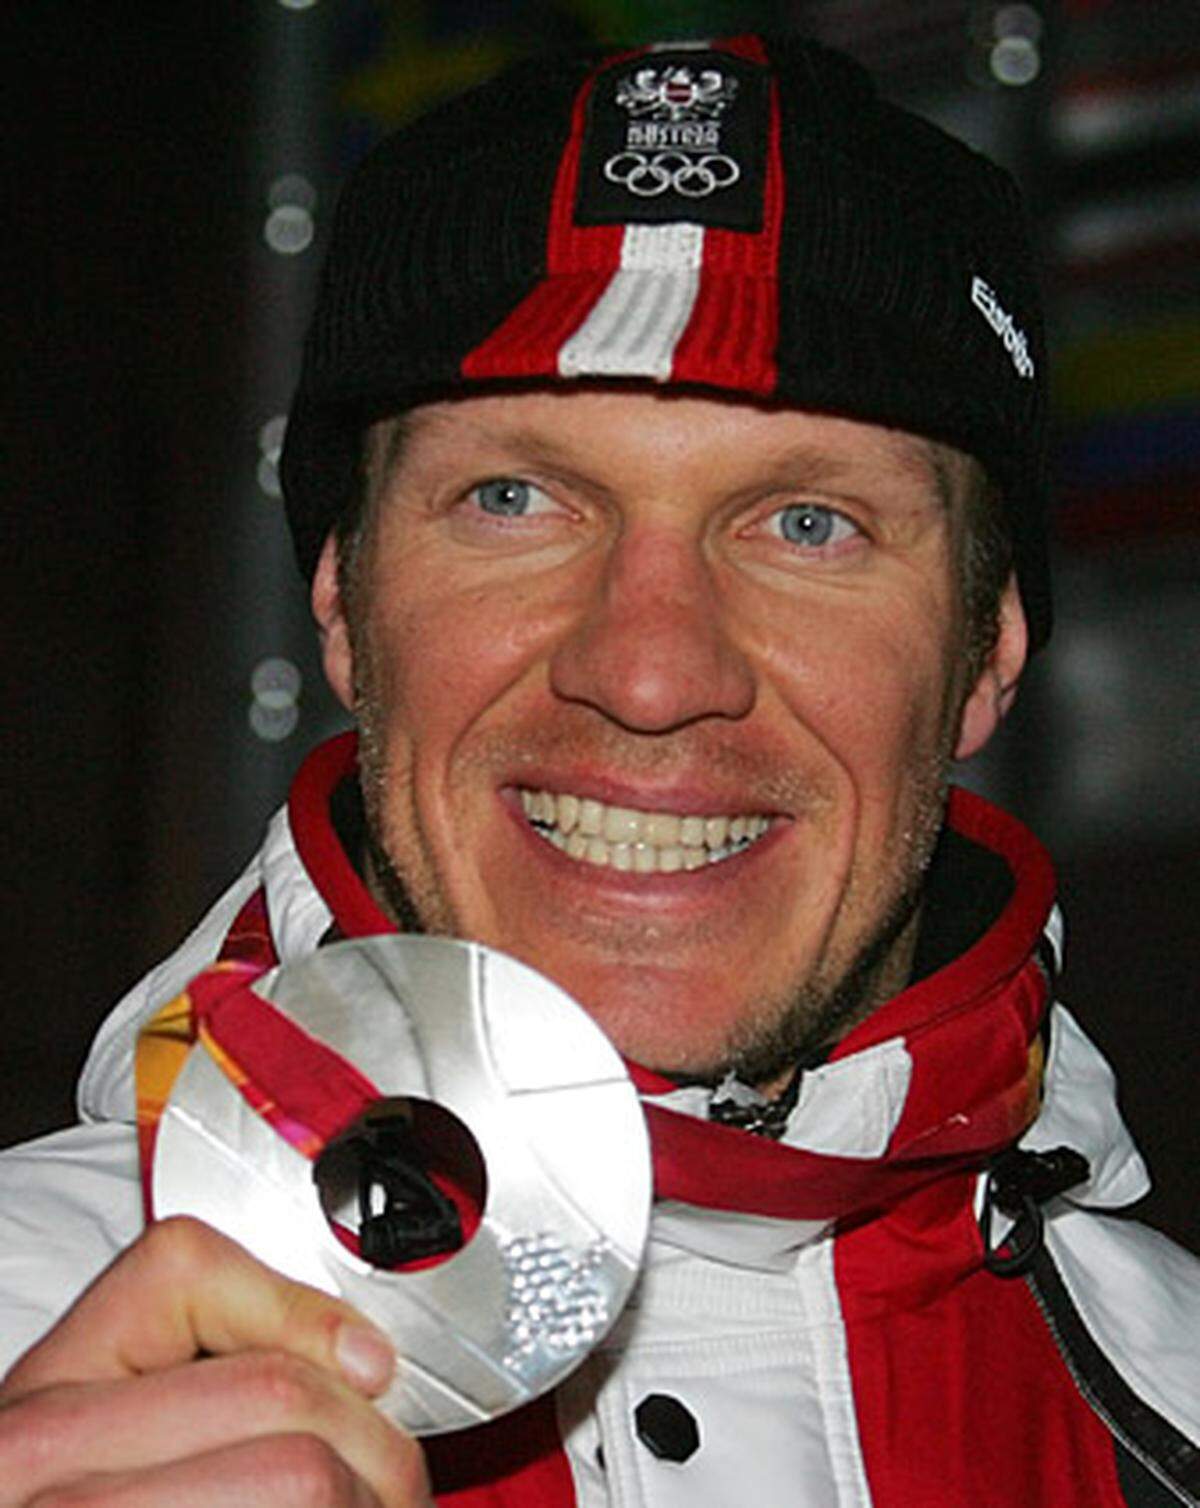 Zehn Jahre nach seinem Debüt im Weltcup nimmt Maier auch an den Olympischen Spielen 2006 in Turin teil. Hinter Kjetil Andre Aamodt gewinnt der 33-Jährige Silber im Super-G und erringt im Riesentorlauf noch die Bronzemedaille.